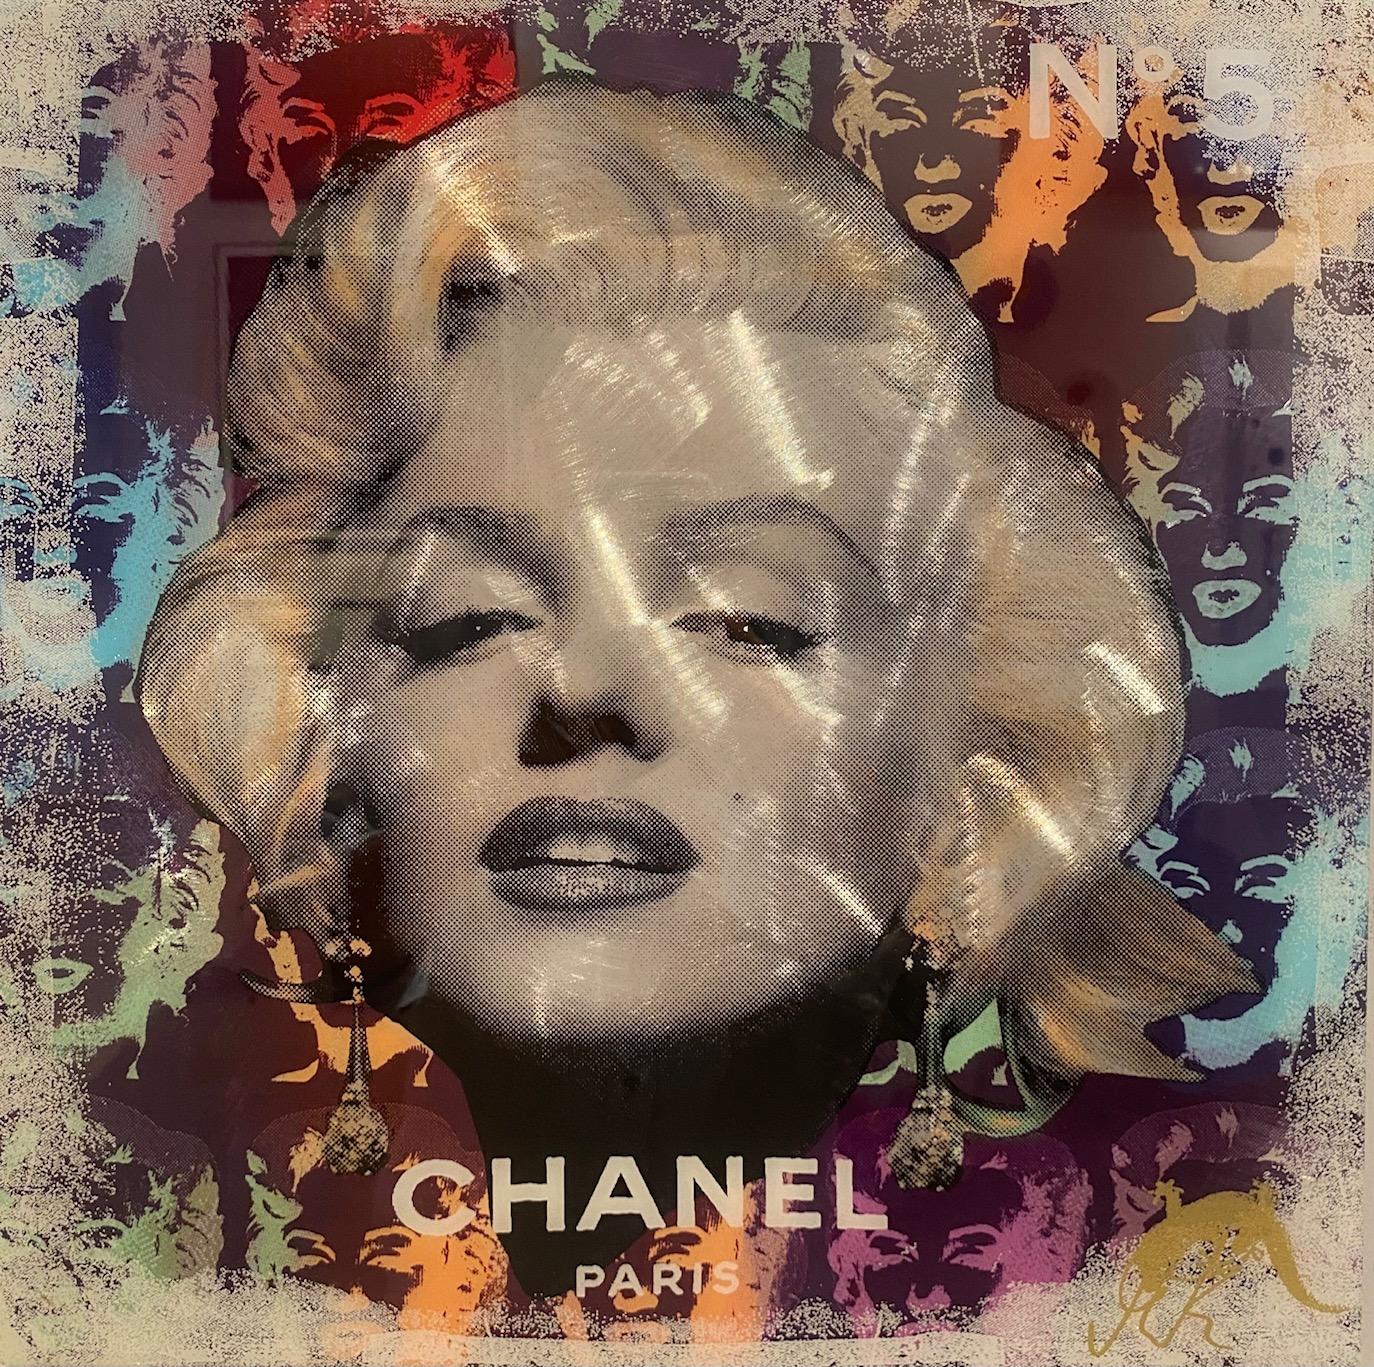 Chanel No. 5 - zeitgenössisches Originalporträt einer Pop-Art-Ikone von Marilyn Monroe – Mixed Media Art von Devin Miles